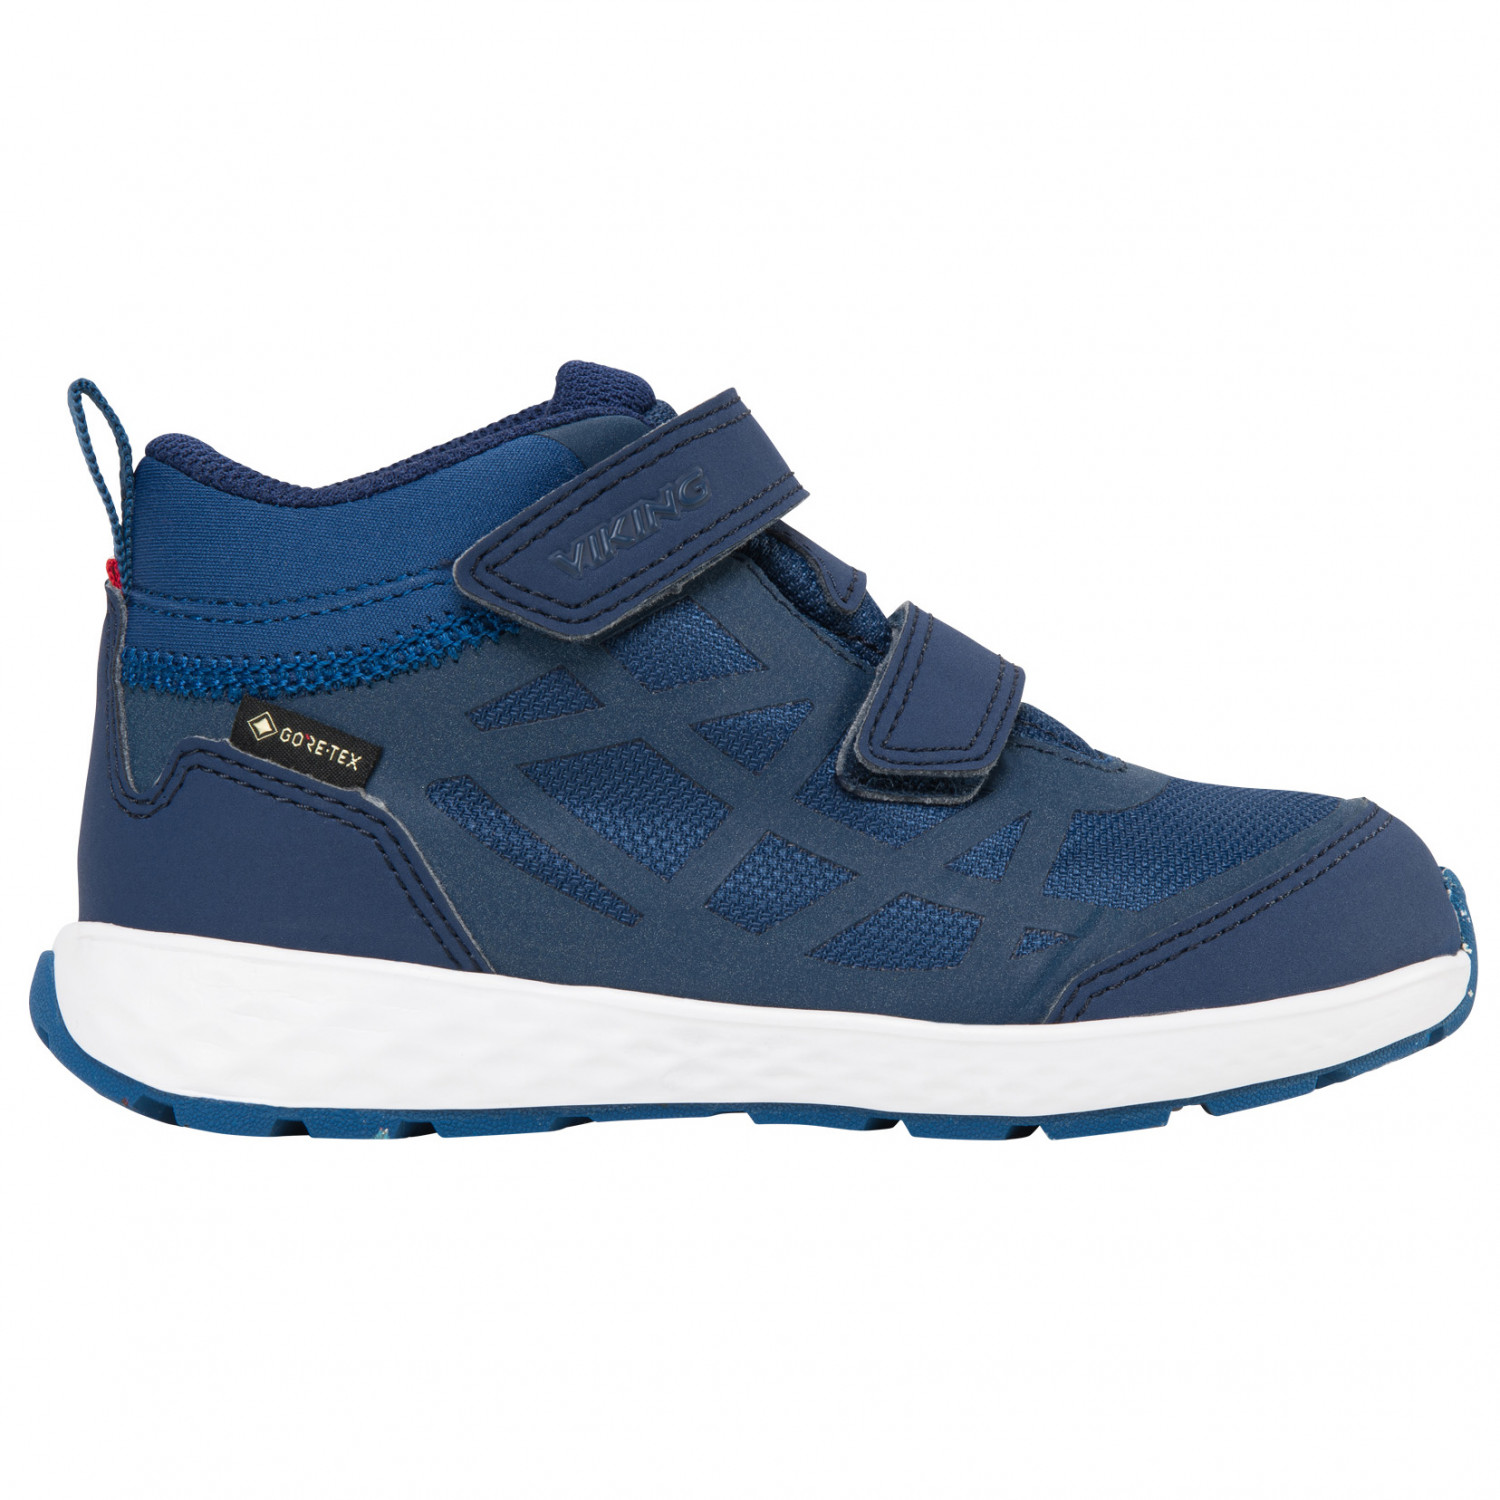 Мультиспортивная обувь Viking Kid's Veme Mid R GTX, синий